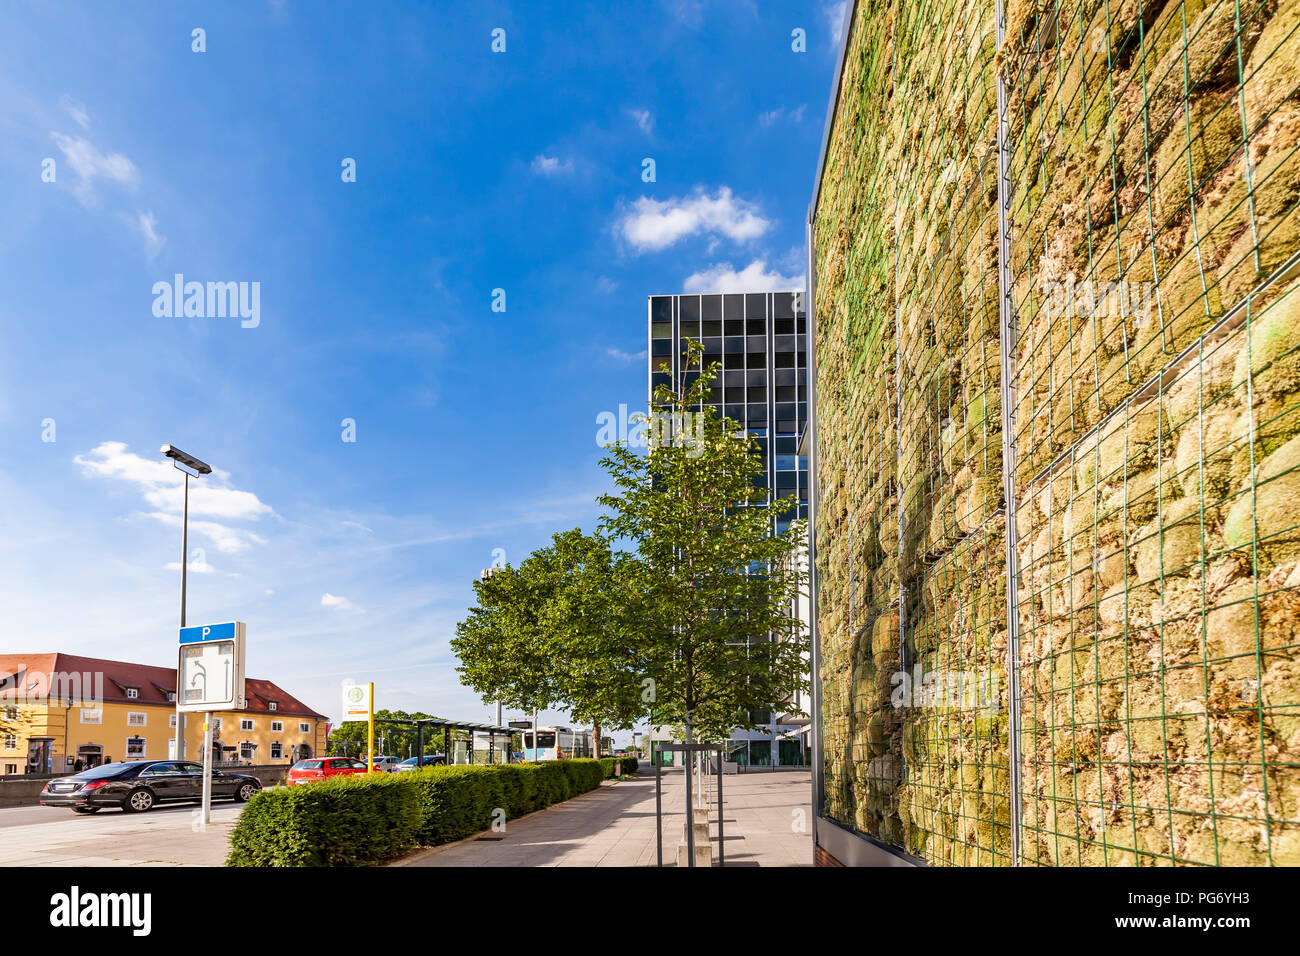 Germania, Stuttgart, a parete con moss vicino alla stazione degli autobus, controllo dell'inquinamento atmosferico Foto Stock